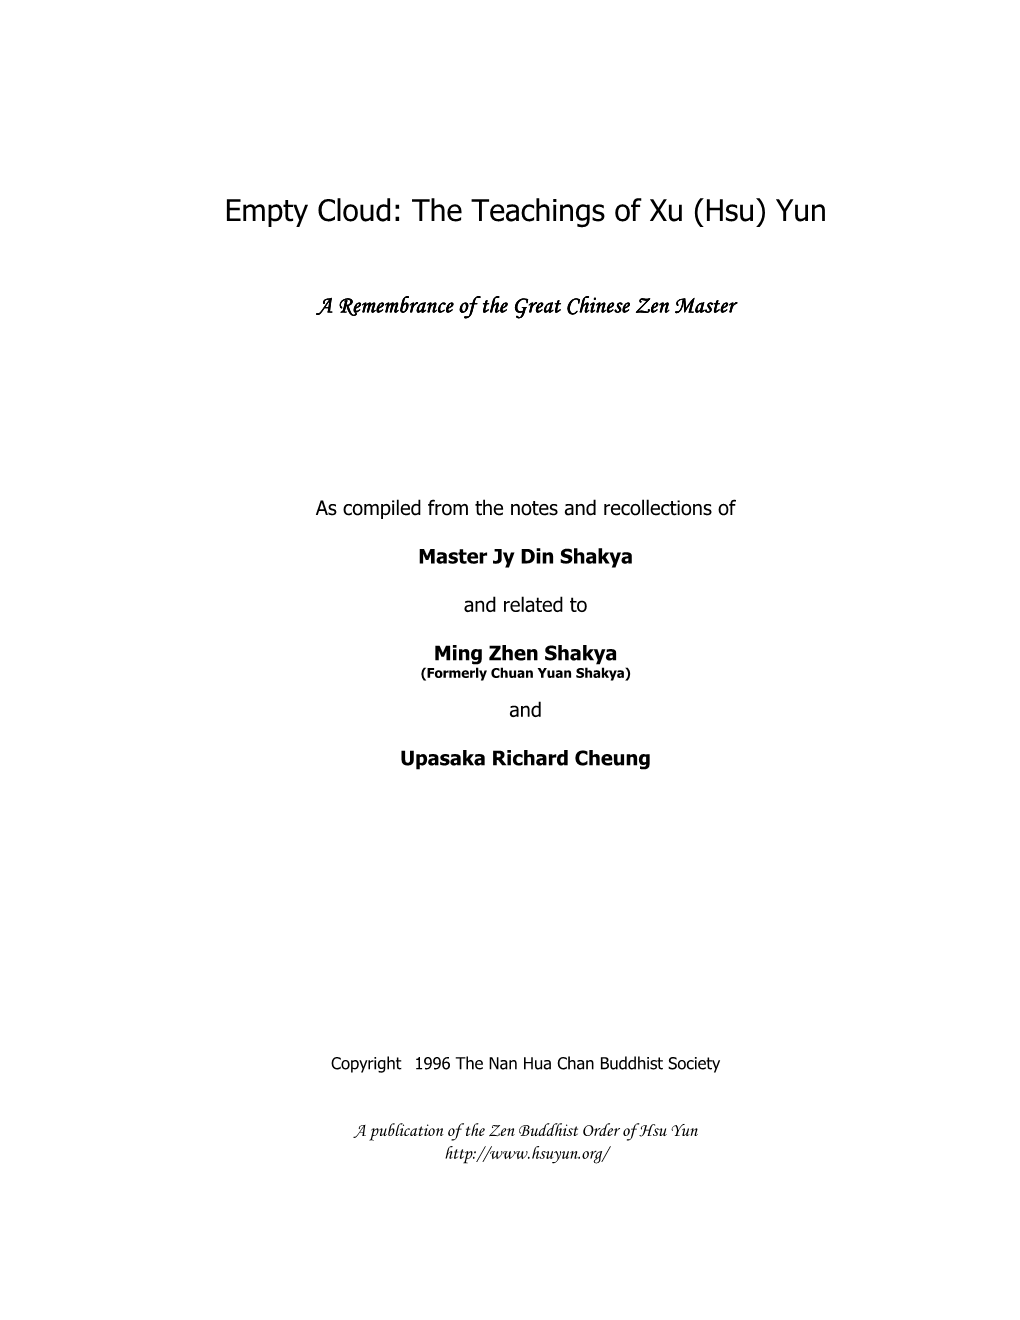 Empty Cloud: the Teachings of Xu (Hsu) Yun